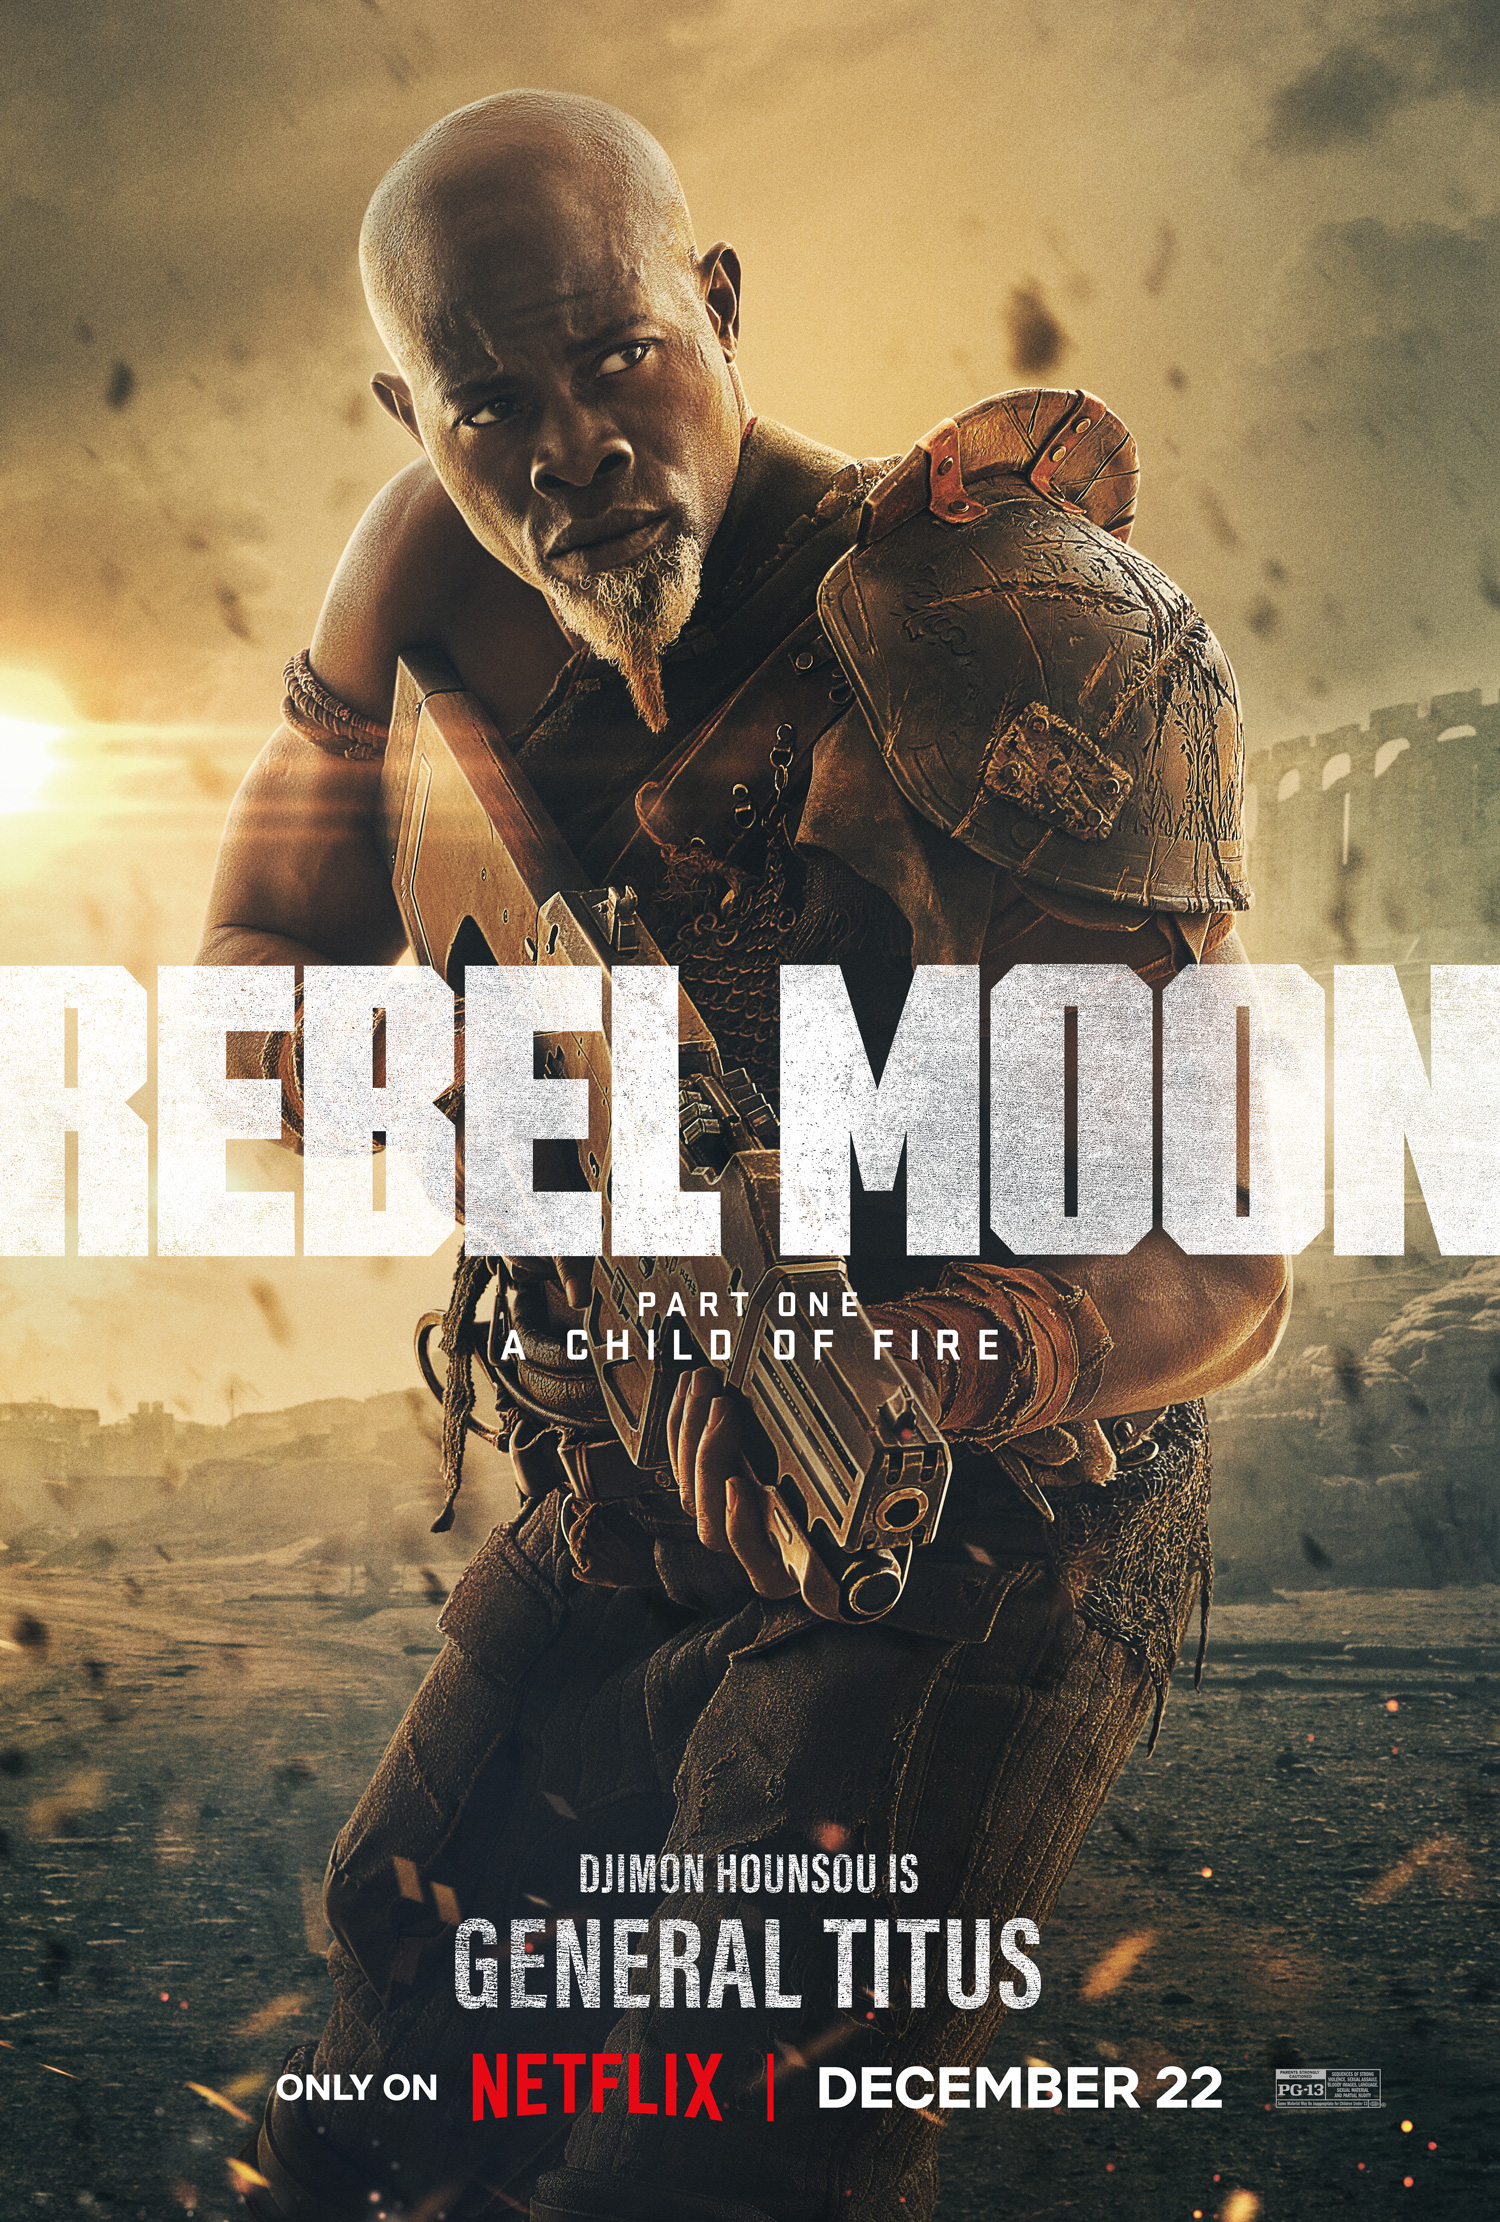 Netflix entrega tudo para os fãs brasileiros na CCXP com a primeira  exibição mundial de Rebel Moon, nova franquia de Zack Snyder - About Netflix